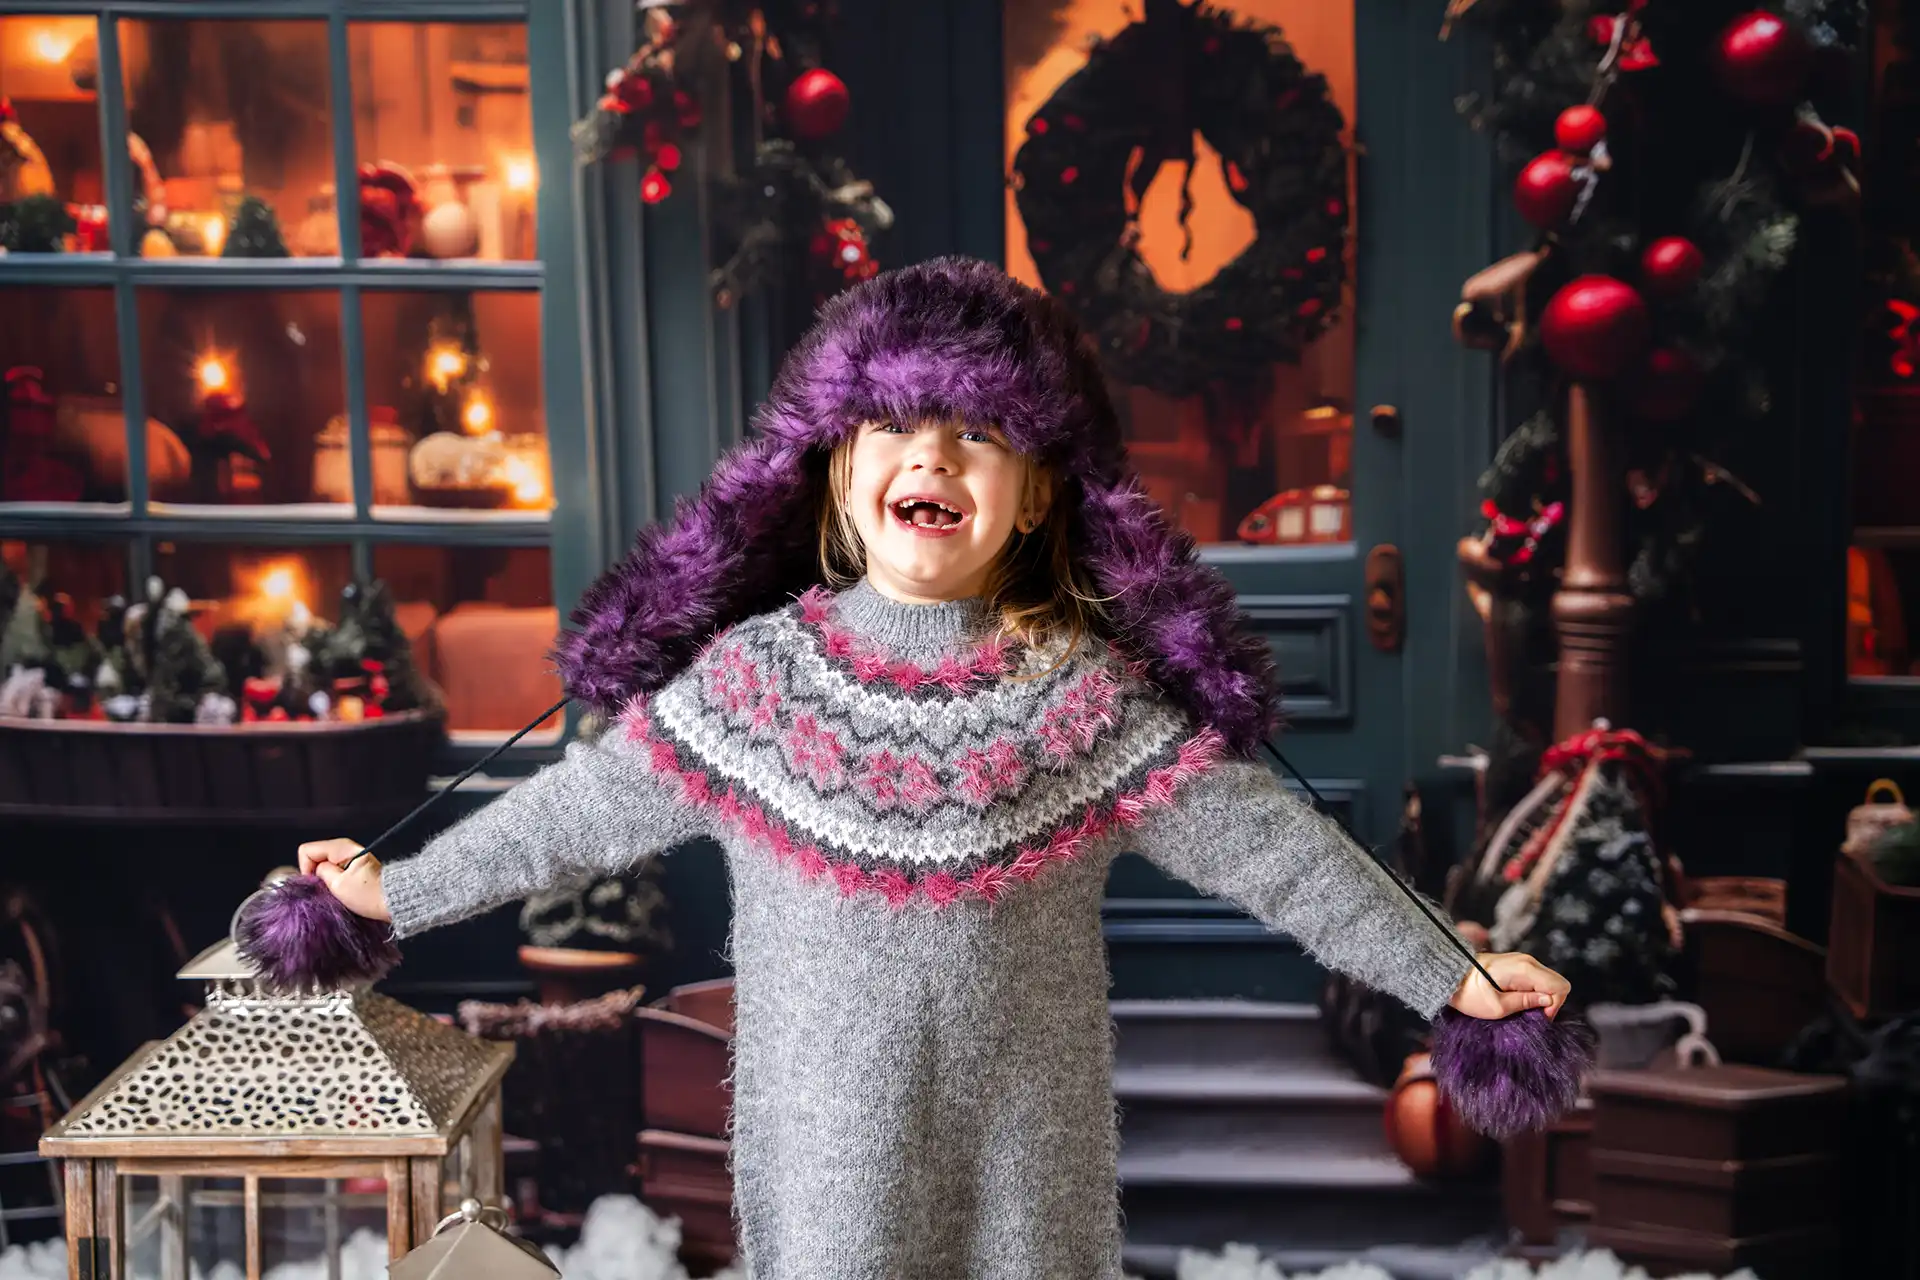 Uśmiechnięta dziewczynka w ciepłym, szarym swetrze i kolorowej zimowej czapce, rozpościera ręce w radosnym geście, stojąc przed świątecznym wnętrzem z ozdobionymi choinkami.